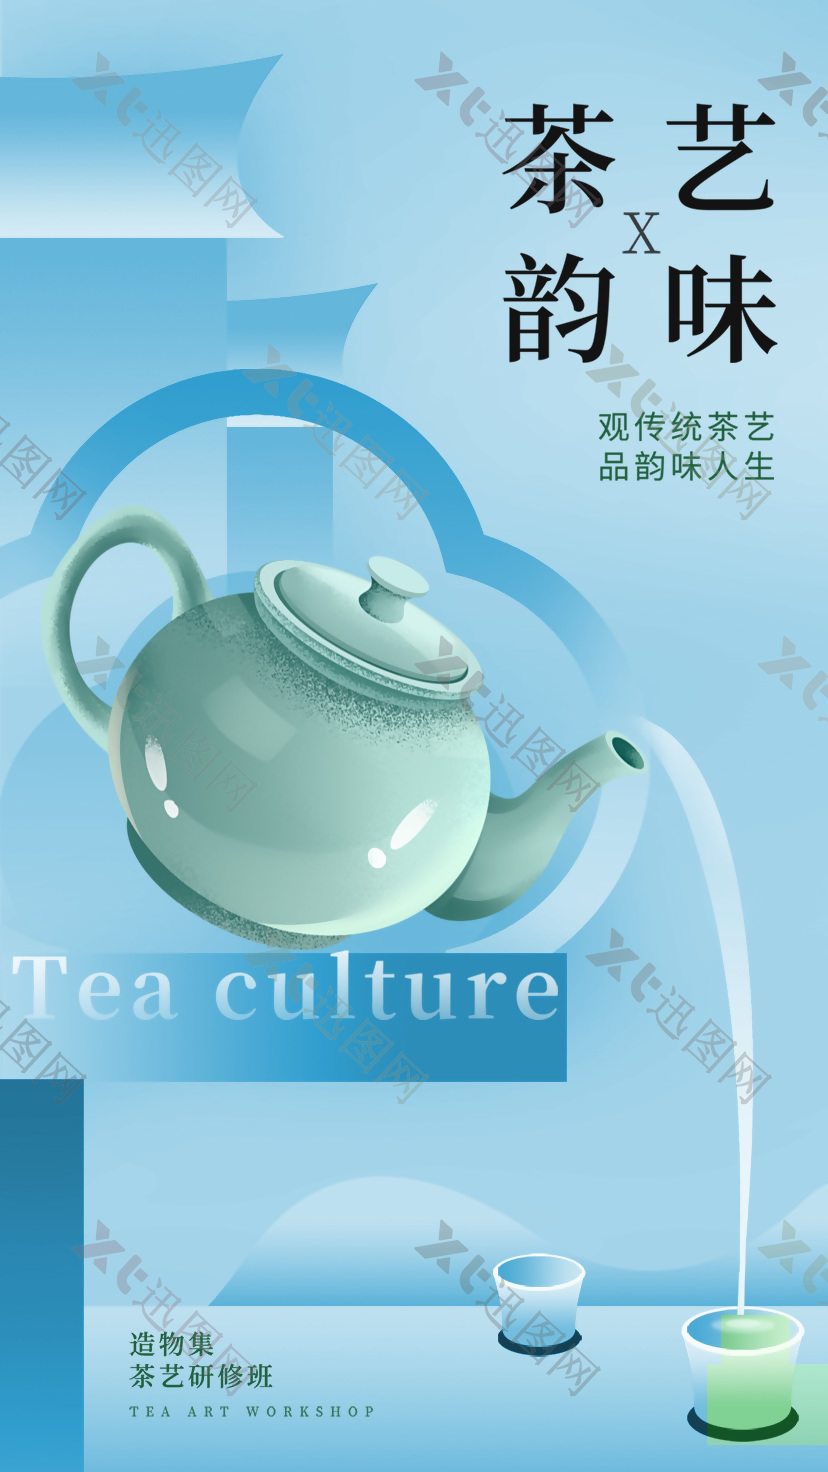 观传统茶艺品韵味人生茶文化蓝色海报